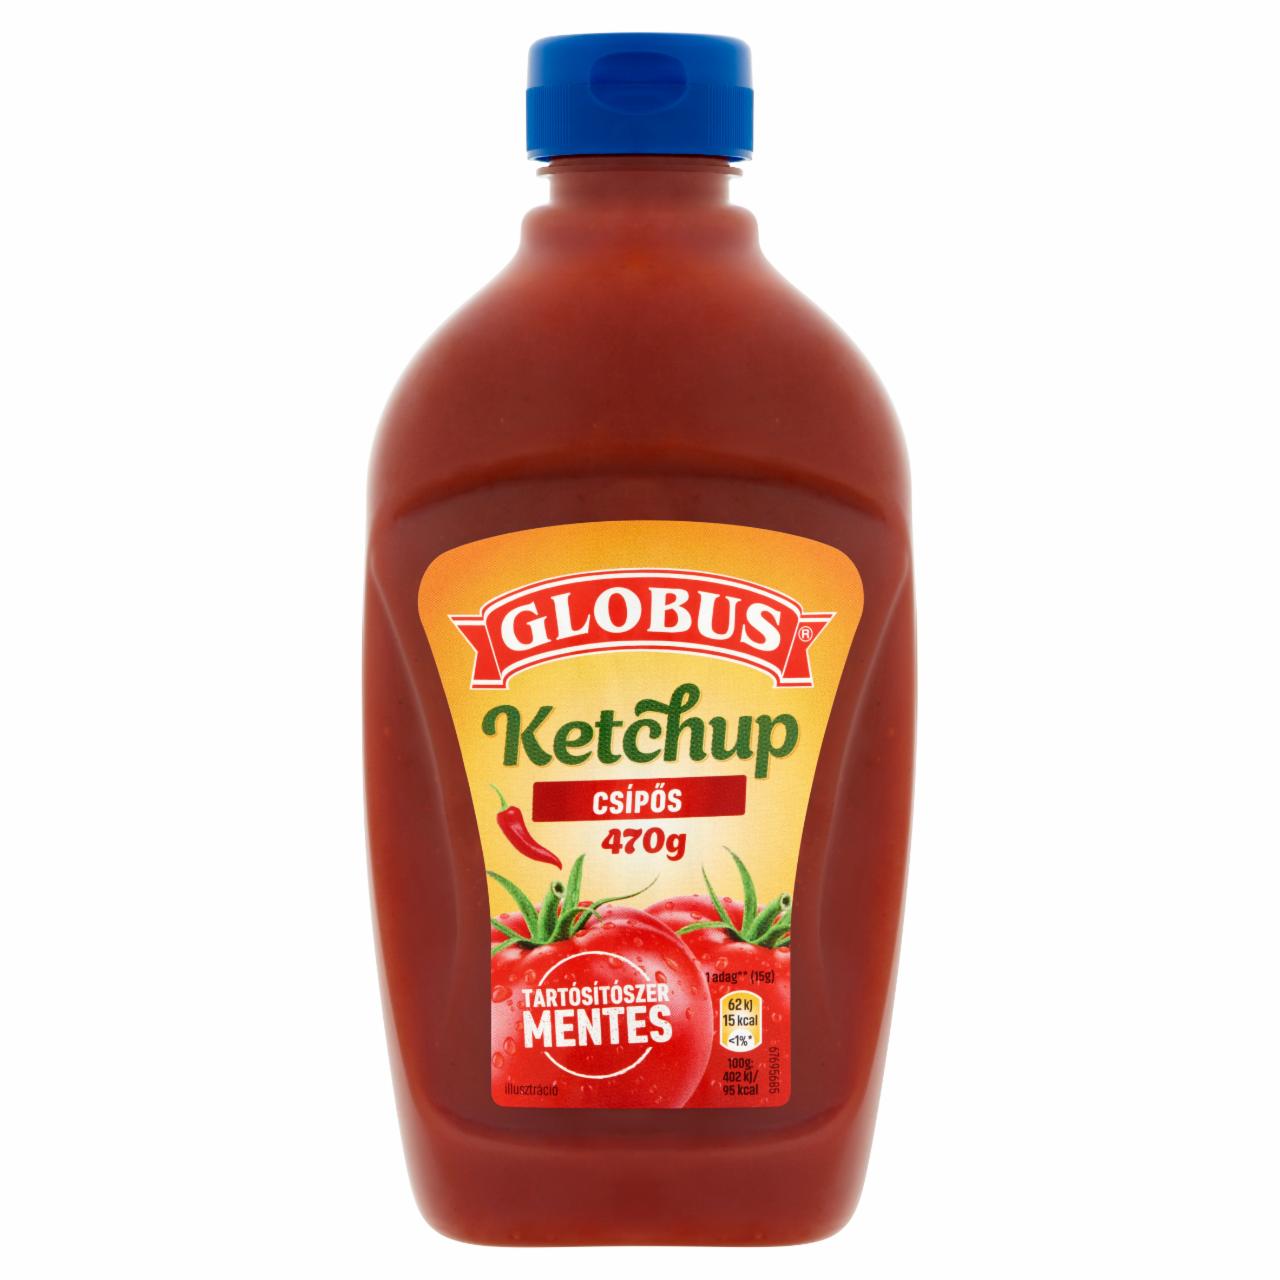 Képek - Globus csípős ketchup 470 g